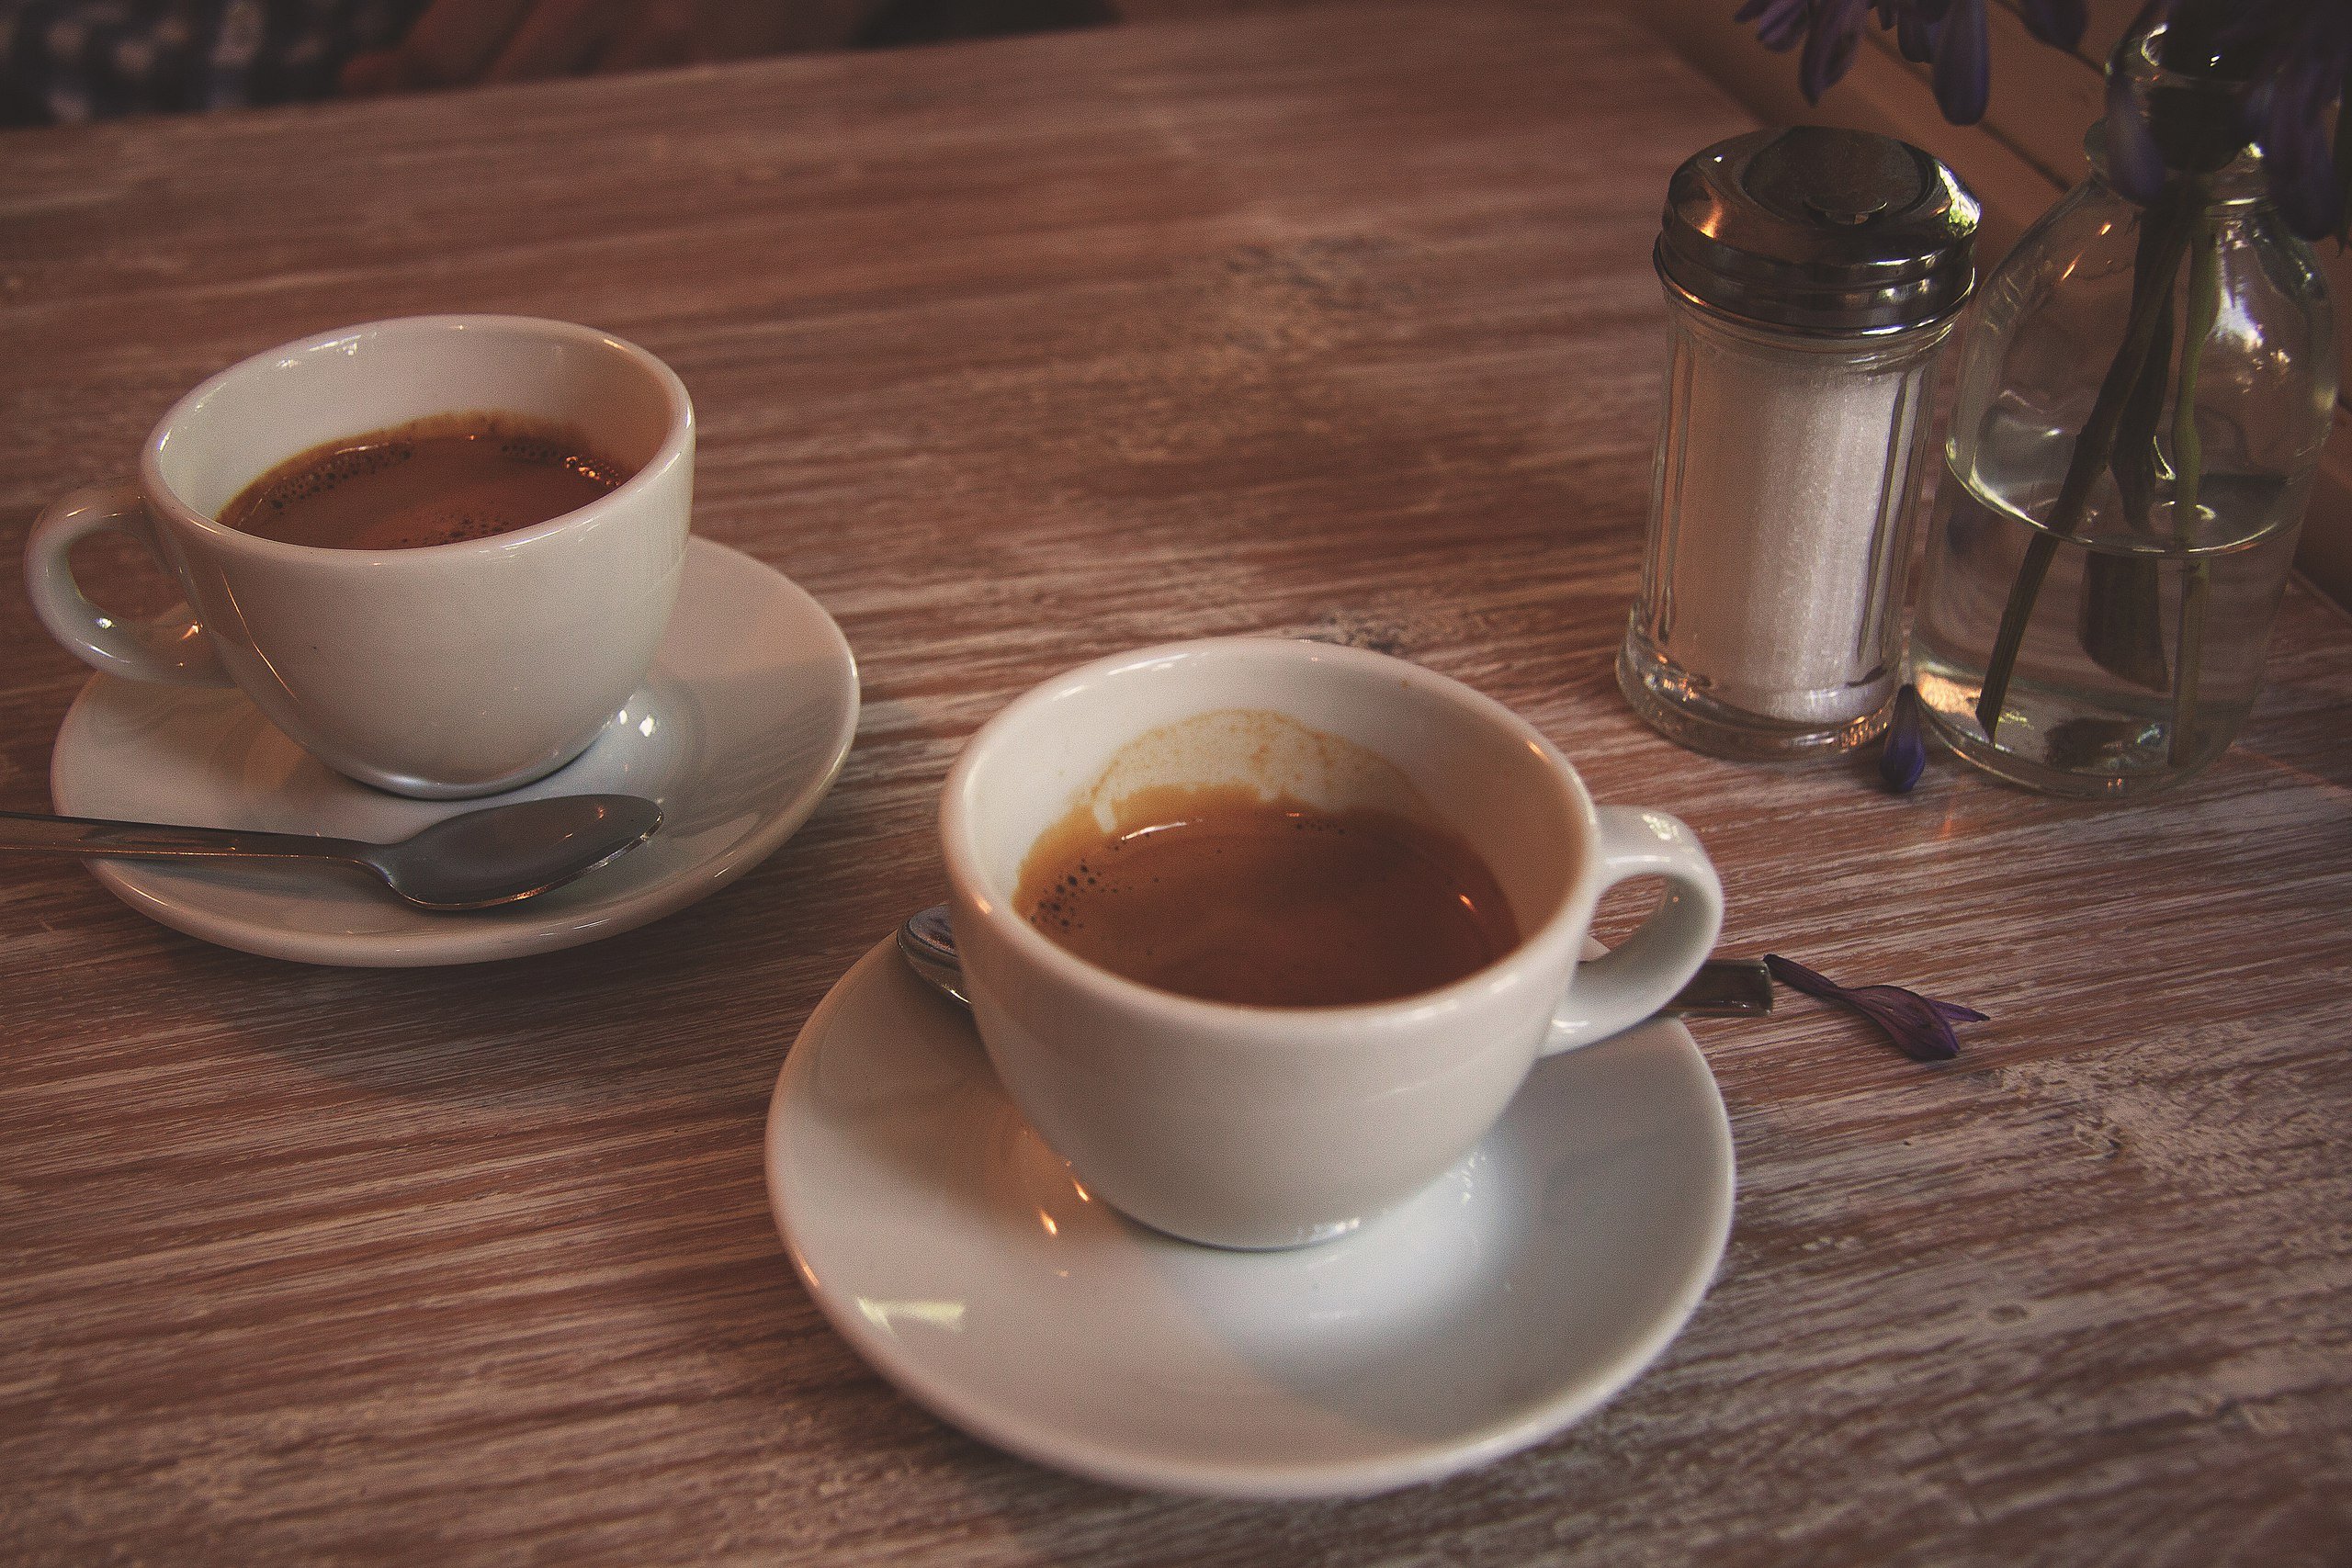 There is coffee in the cup. Чашка кофе. Чашка кофе на столе. Две чашки кофе. Чашка чая и кофе.